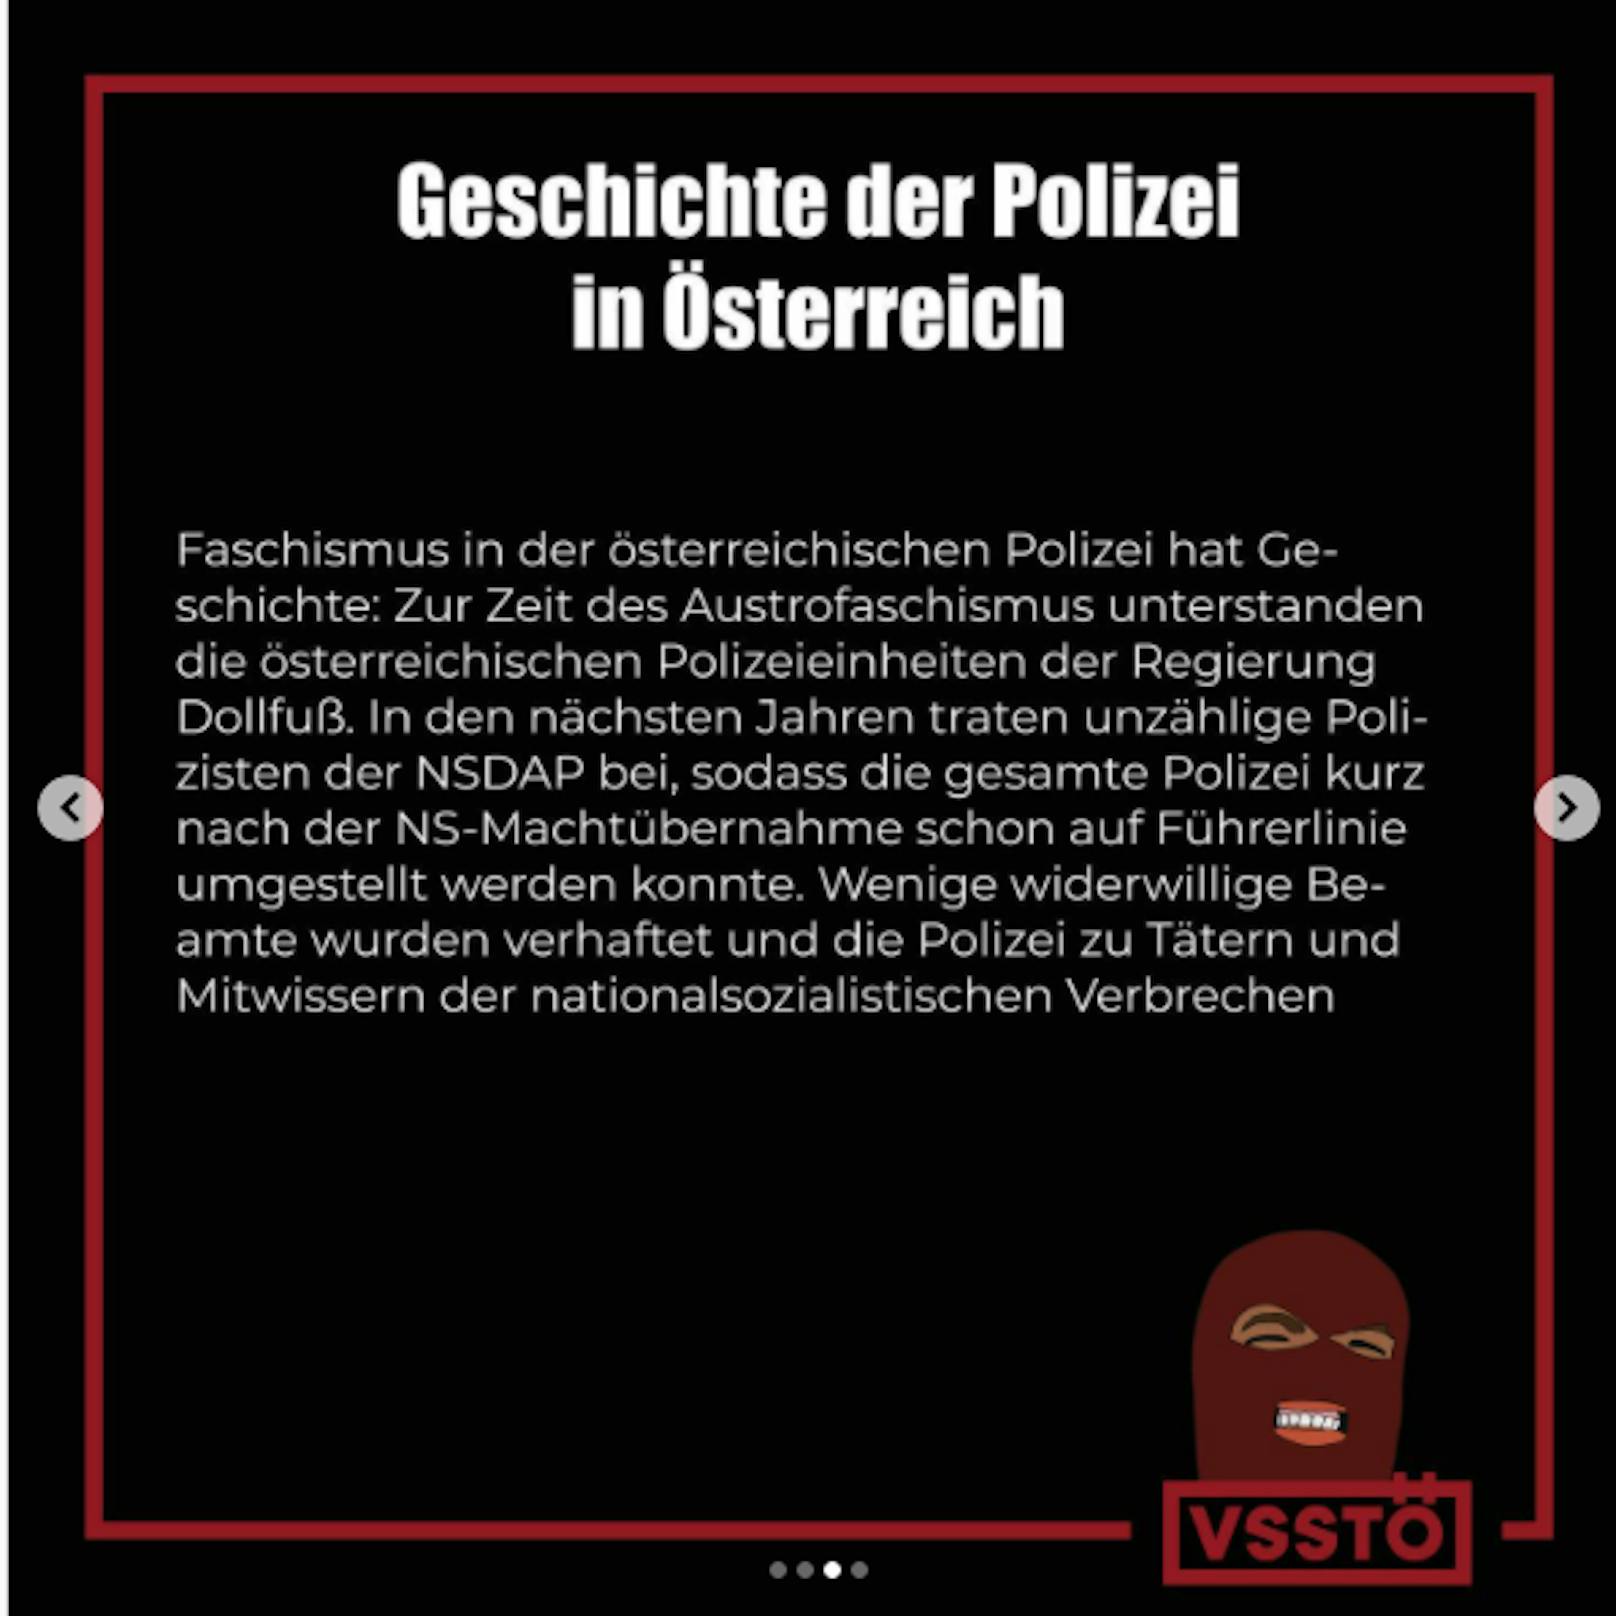 Der VSStÖ behauptet, dass die Polizei zu "Tätern und Mitwissern der nationalsozialistischen Verbrechen" wurde.